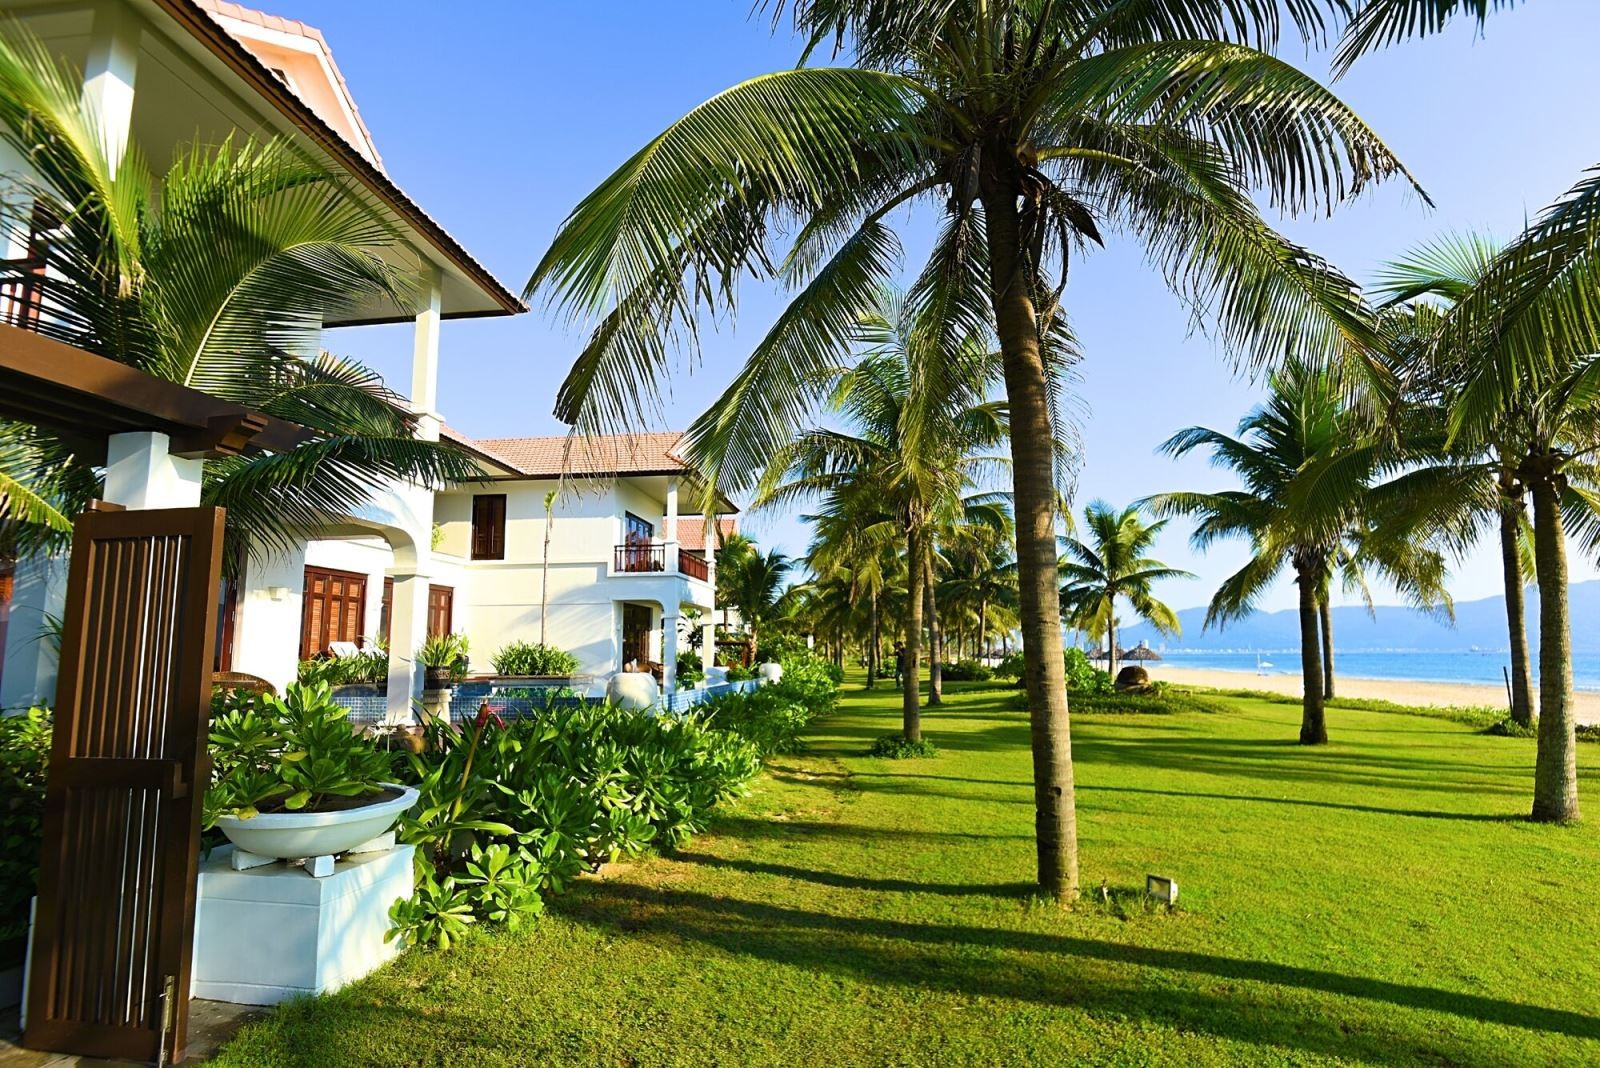 
Bất động sản du lịch, nghỉ dưỡng là một lĩnh vực mới phát triển tại Việt Nam, có tiềm năng và triển vọng phát triển khá tích cực
